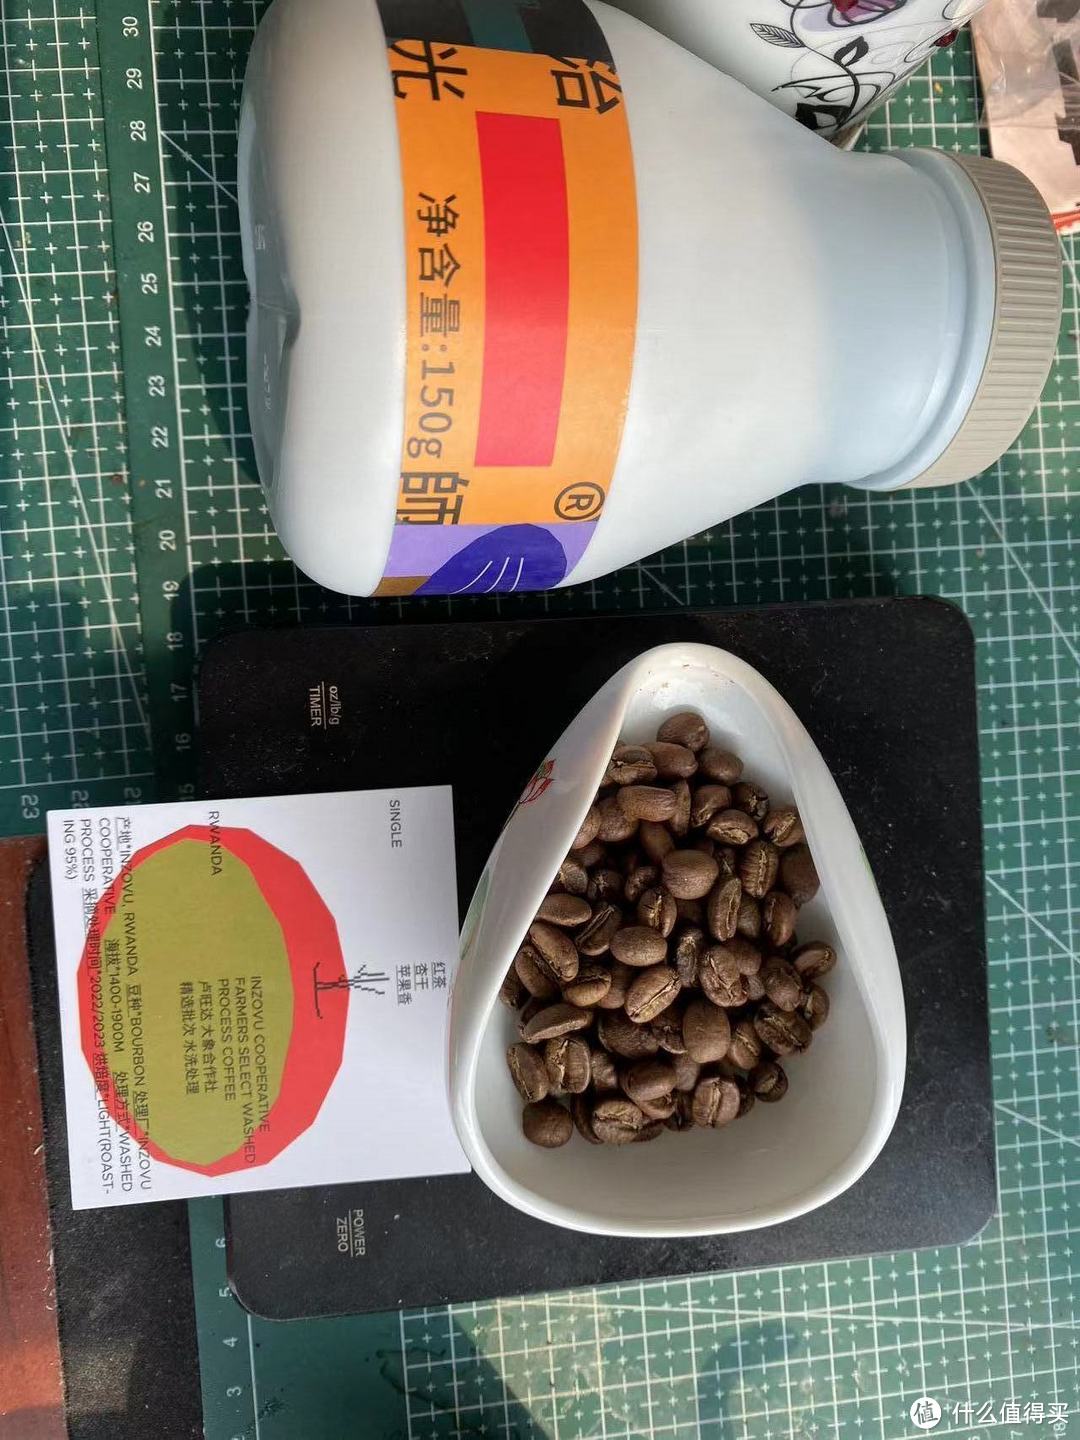 PDD上买咖啡豆便宜，但是靠谱好喝么？直接下单测评看看PDD上的咖啡豆质量如何